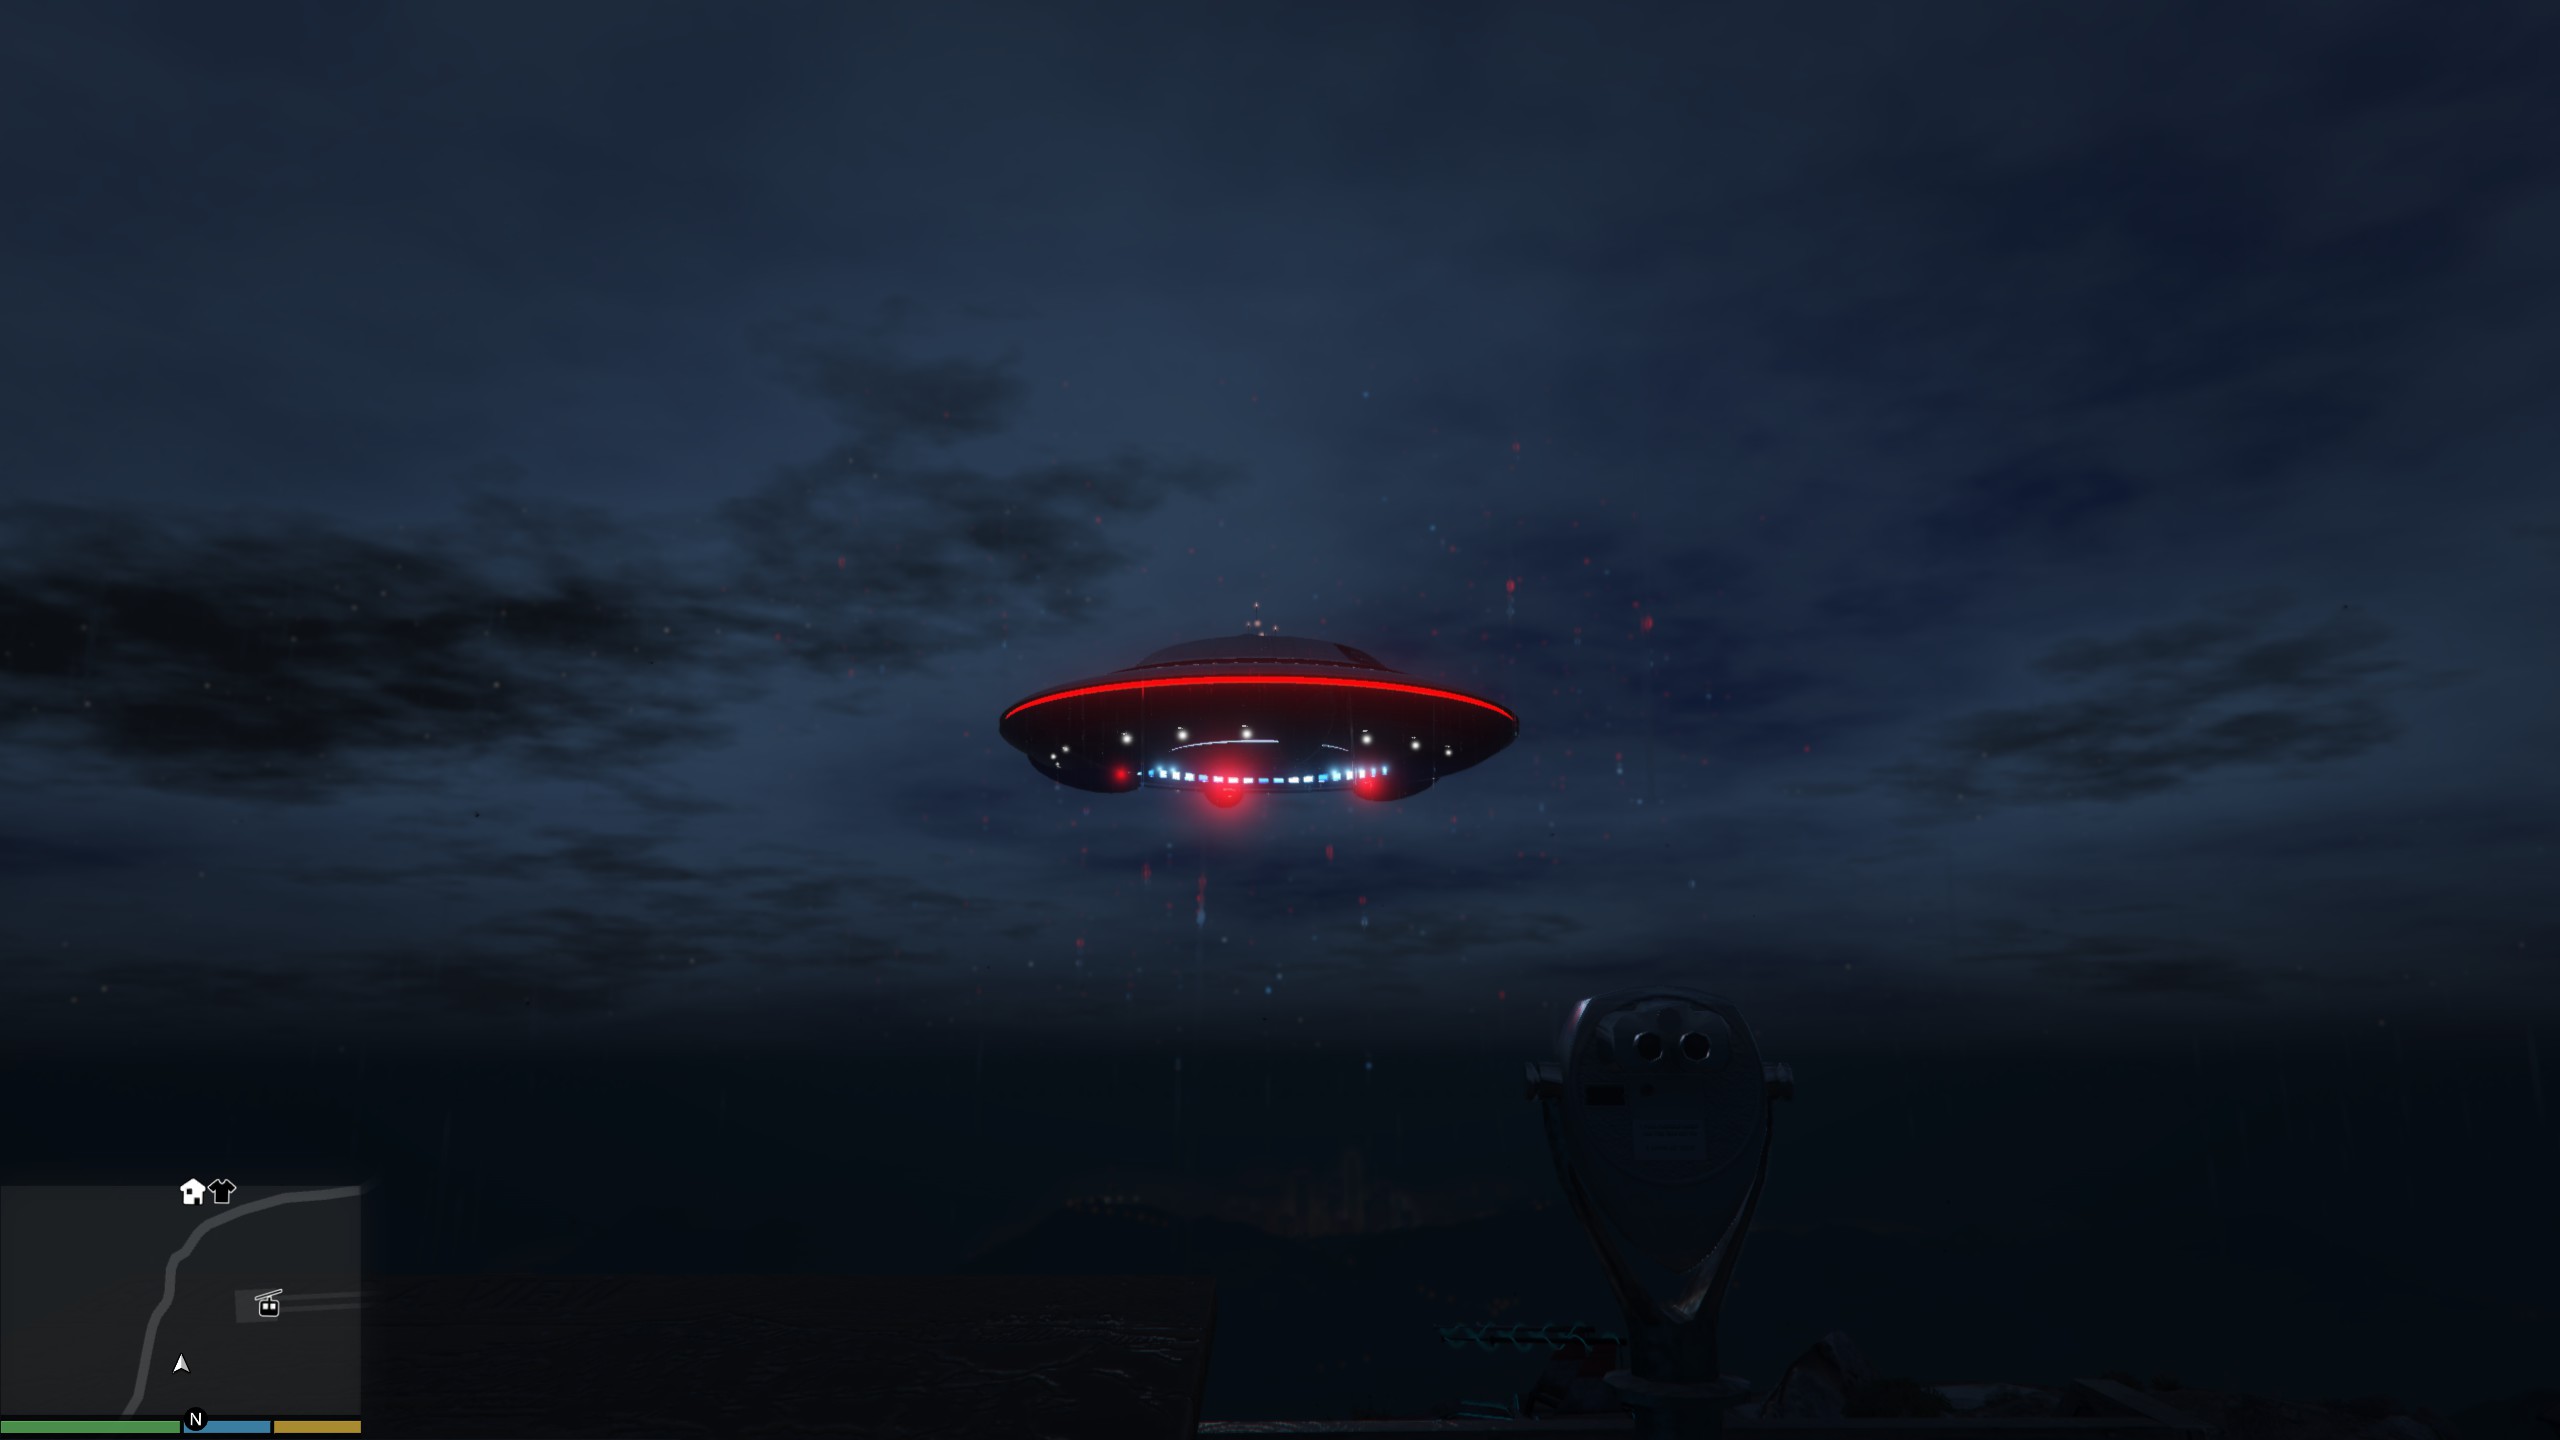 Strange/Neat Rain Effect at Chiliad UFO : chiliadmystery